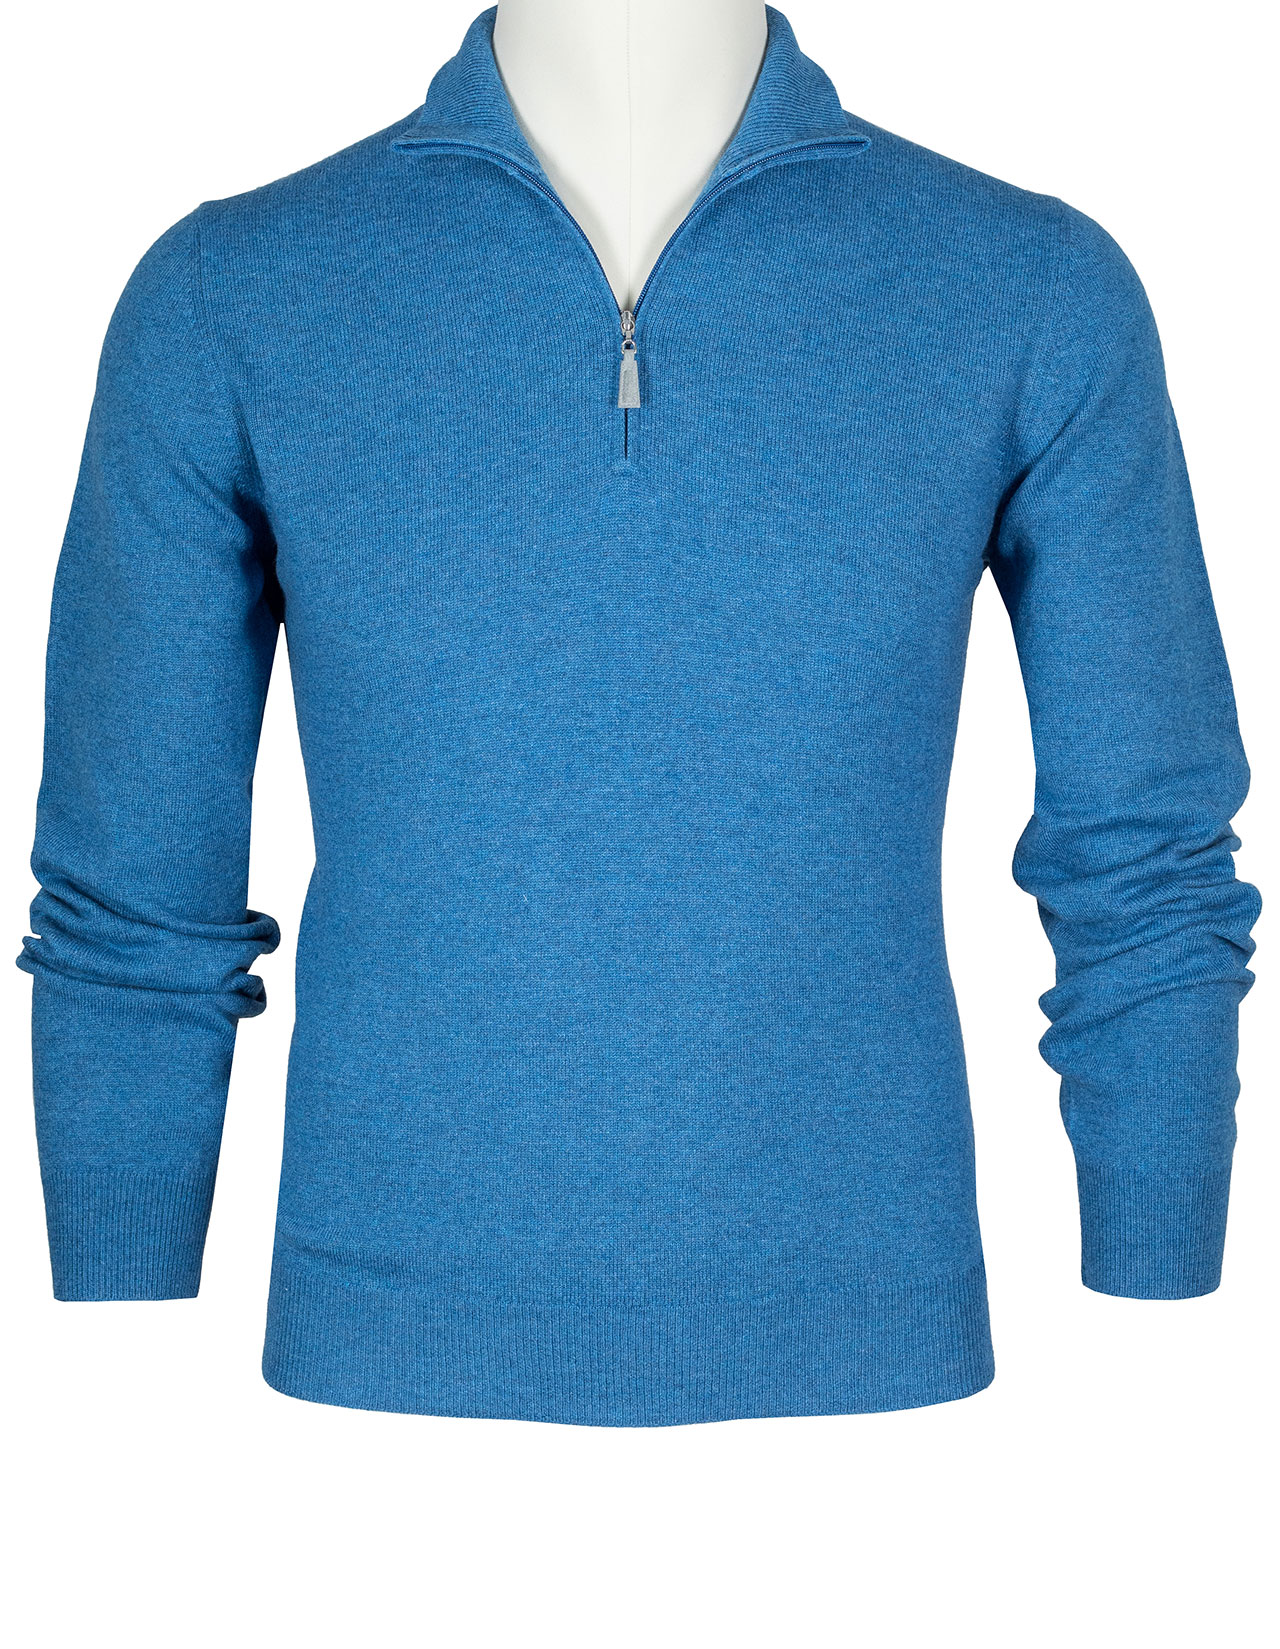 SOBS Pullover mit Troyerkragen in blau meliert